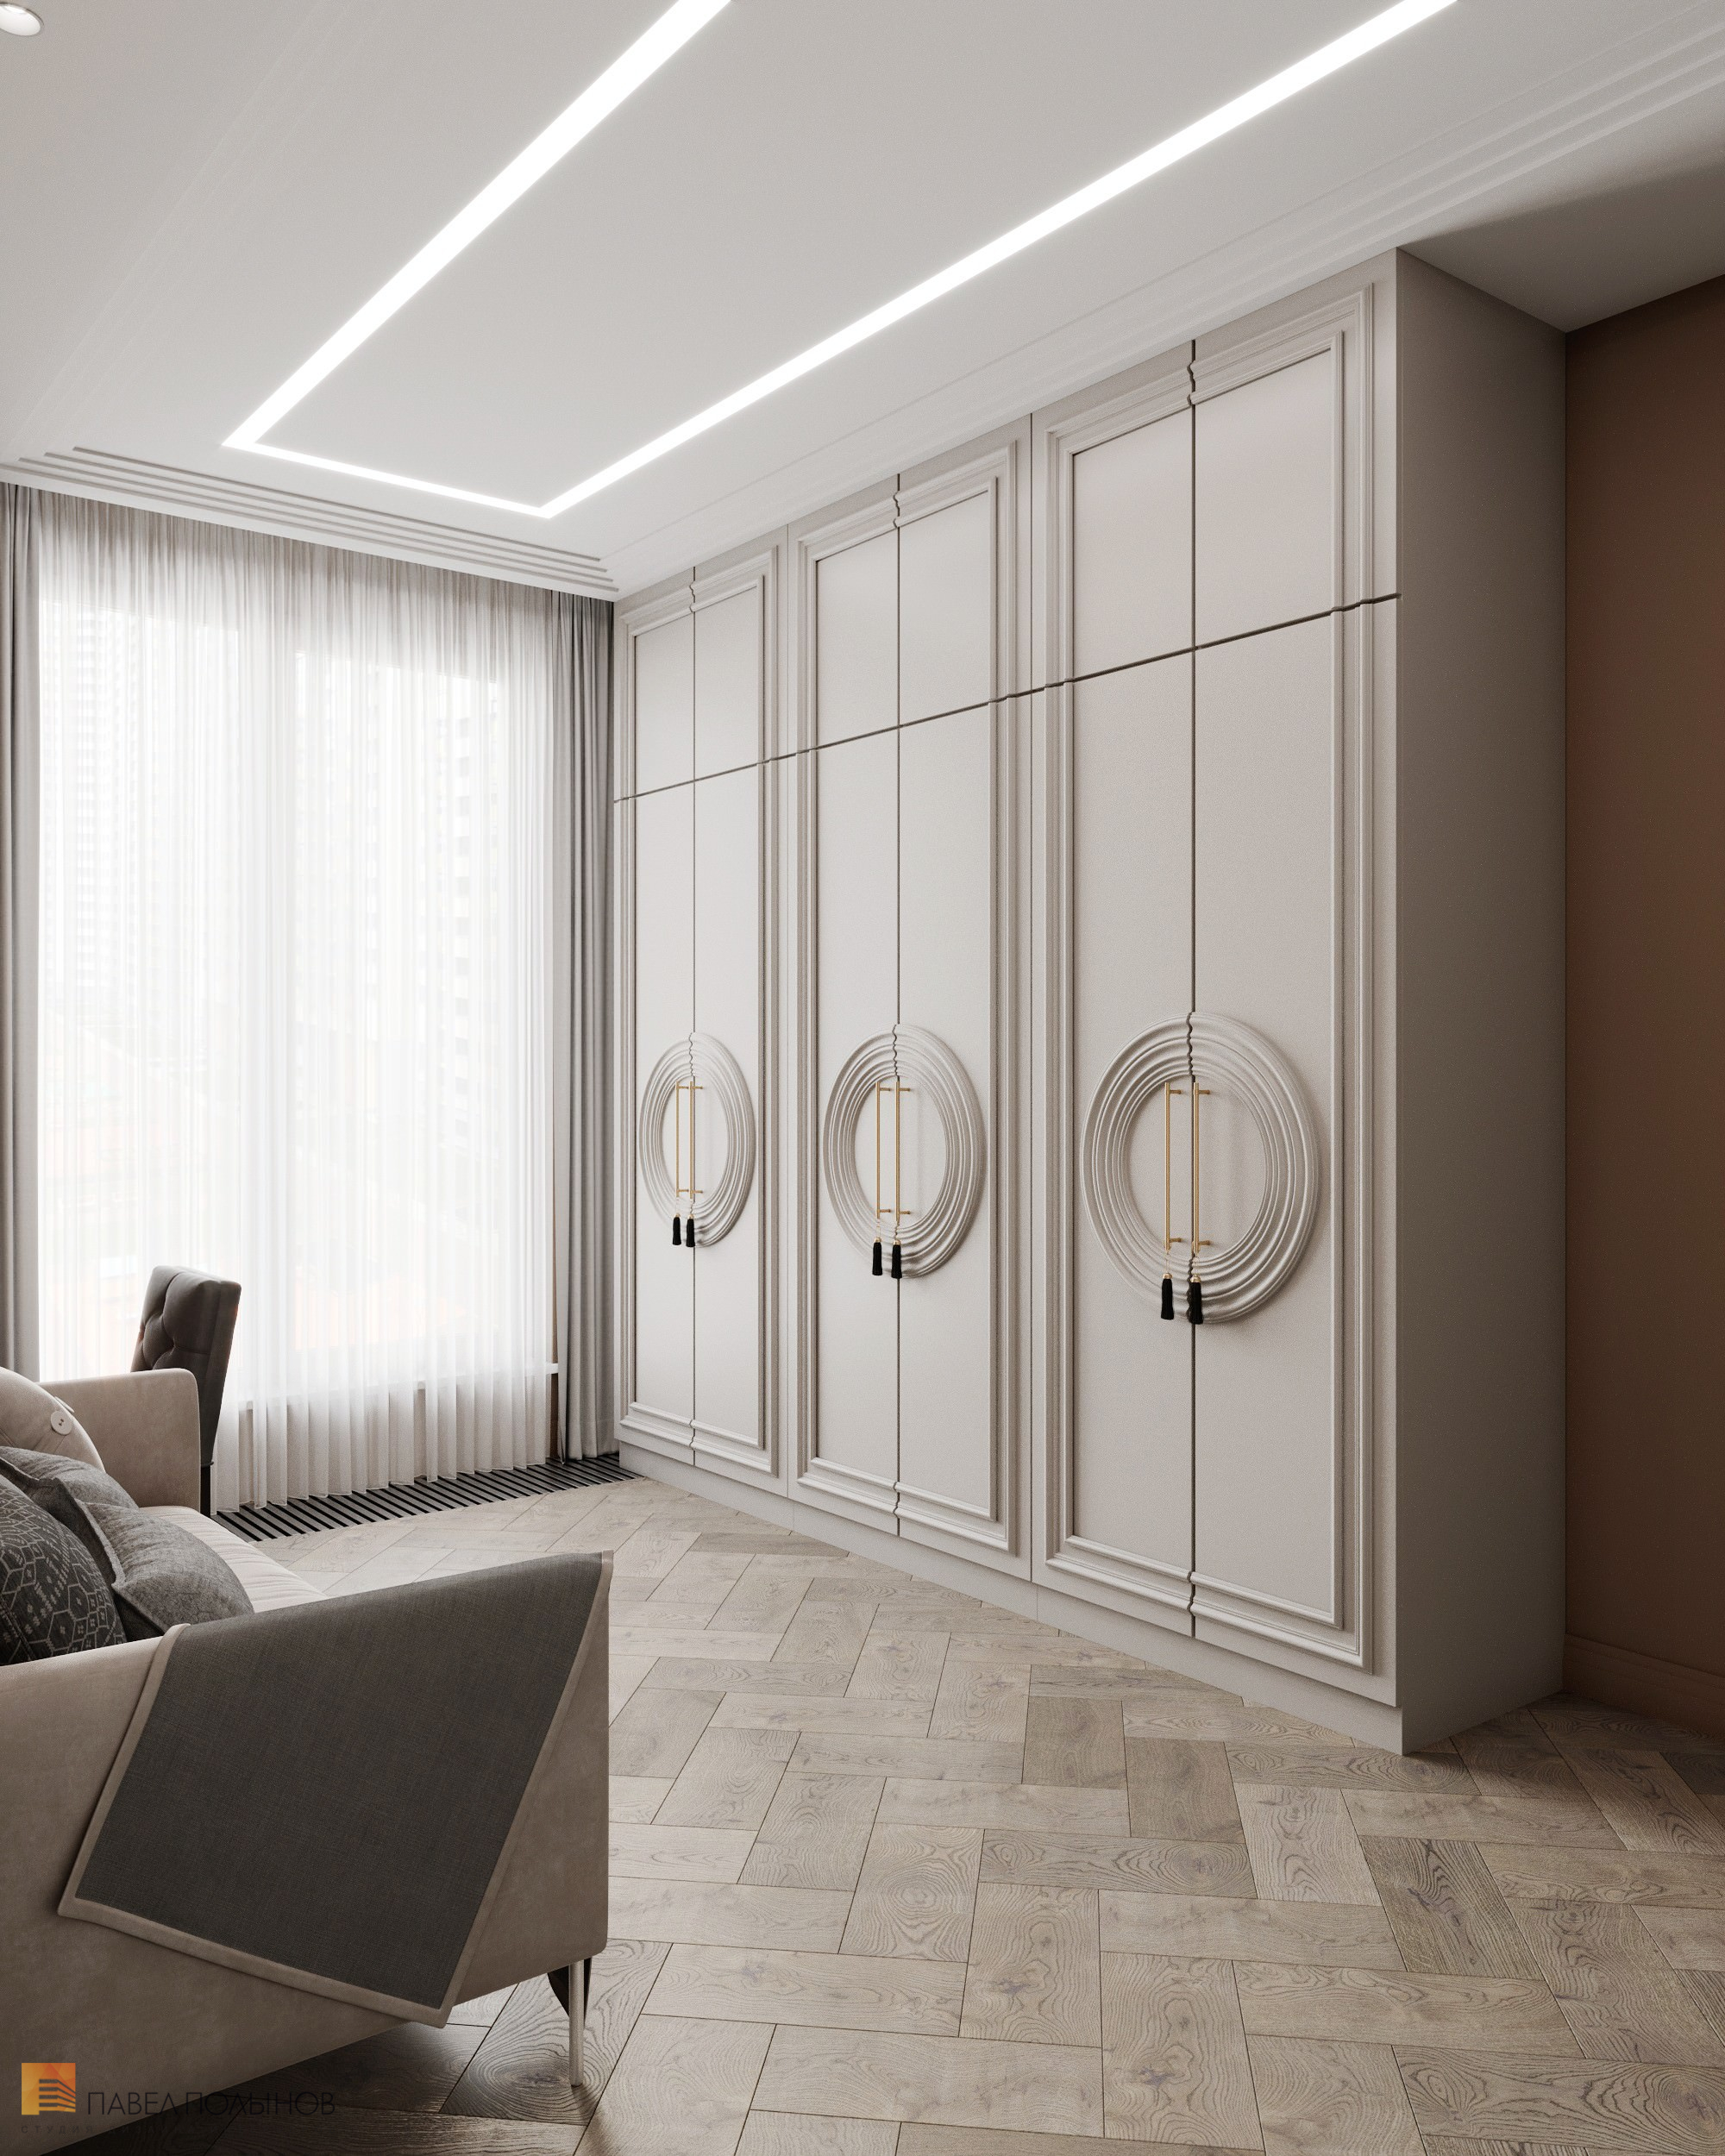 Фото дизайн гардеробной из проекта «Интерьер квартиры в современном стиле, 178 кв.м.»